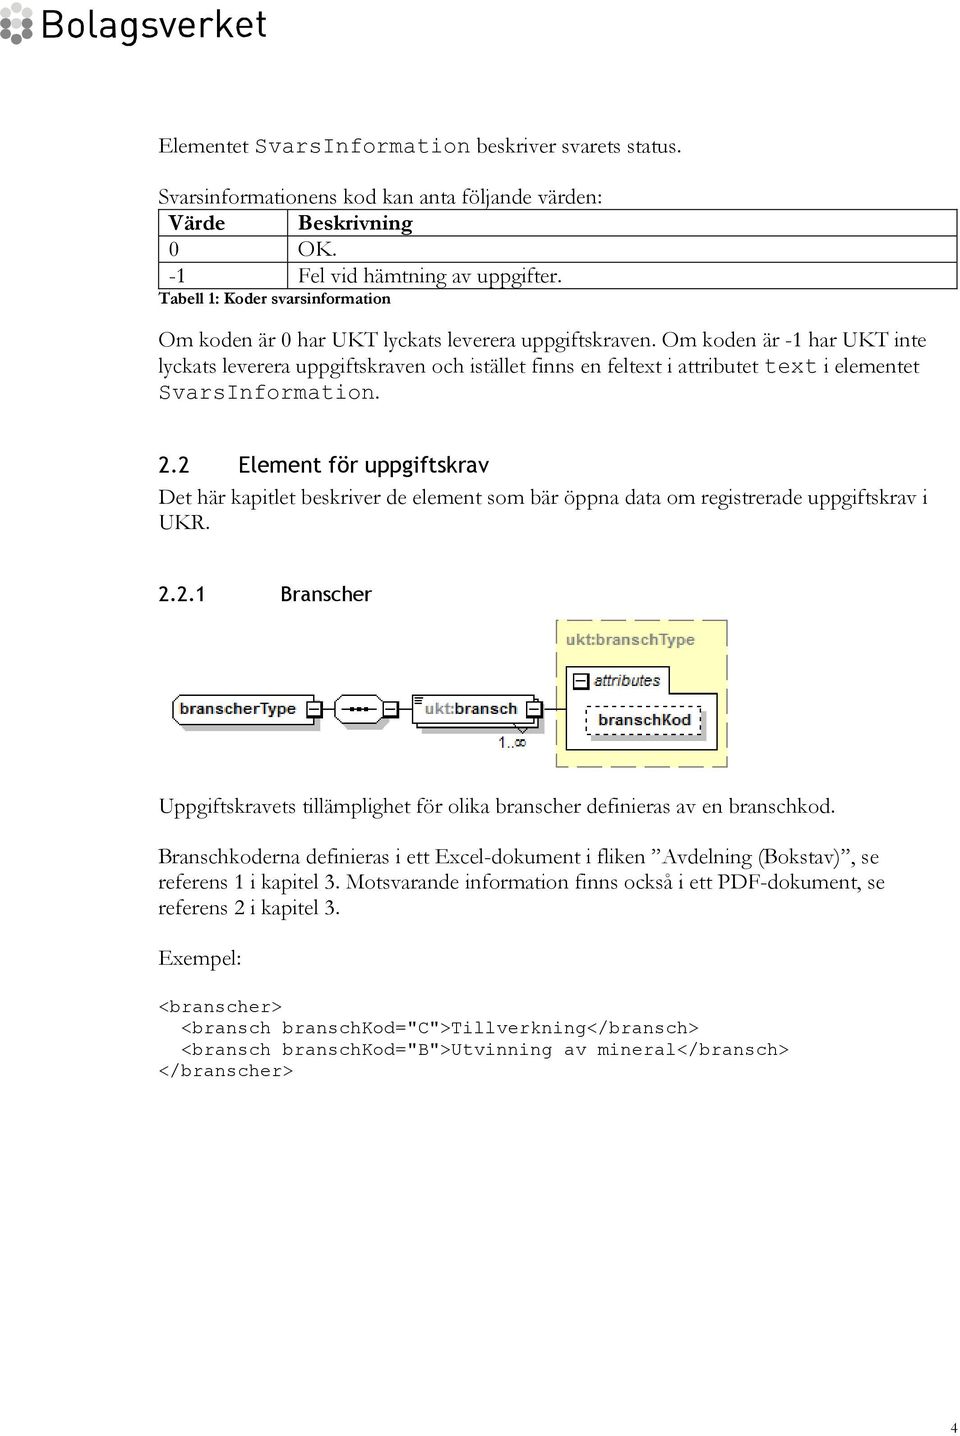 Om koden är -1 har UKT inte lyckats leverera uppgiftskraven och istället finns en feltext i attributet text i elementet SvarsInformation. 2.